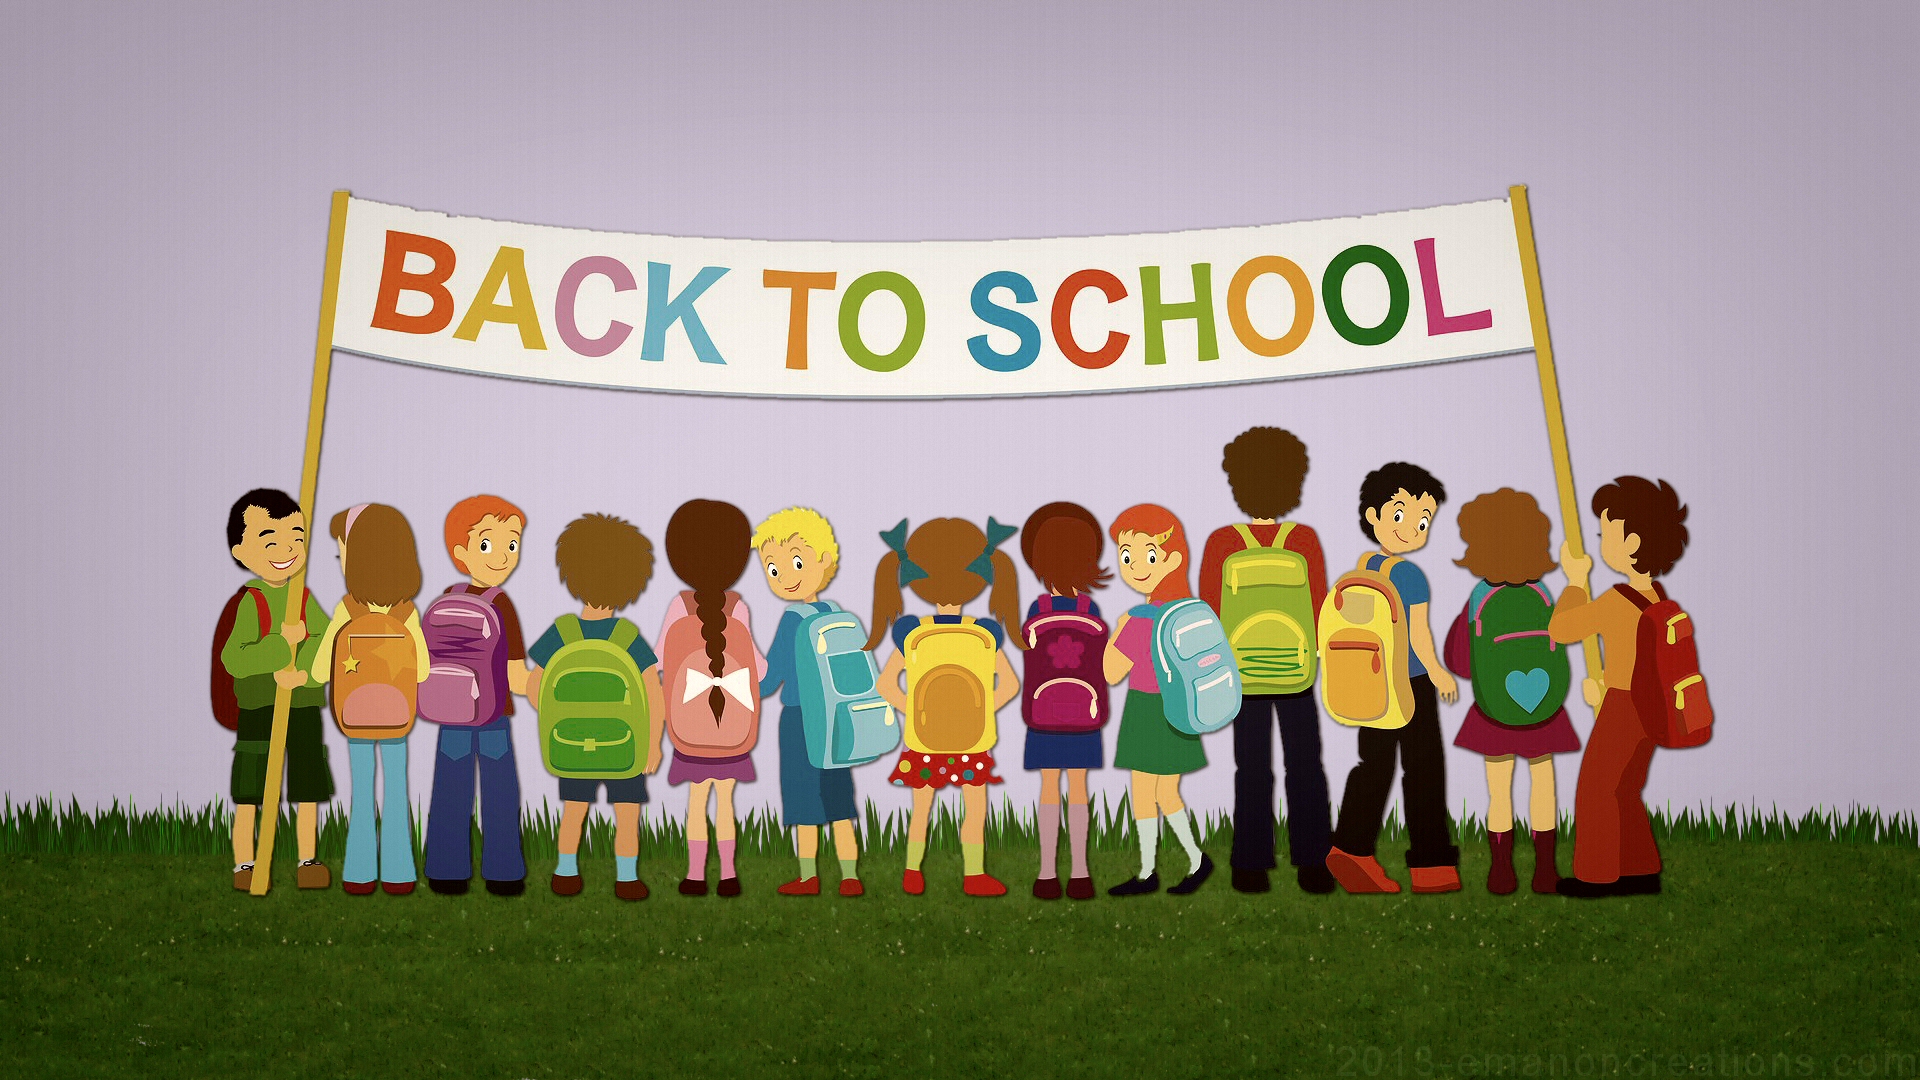 HD Back to School Wallpaper | PixelsTalk Net